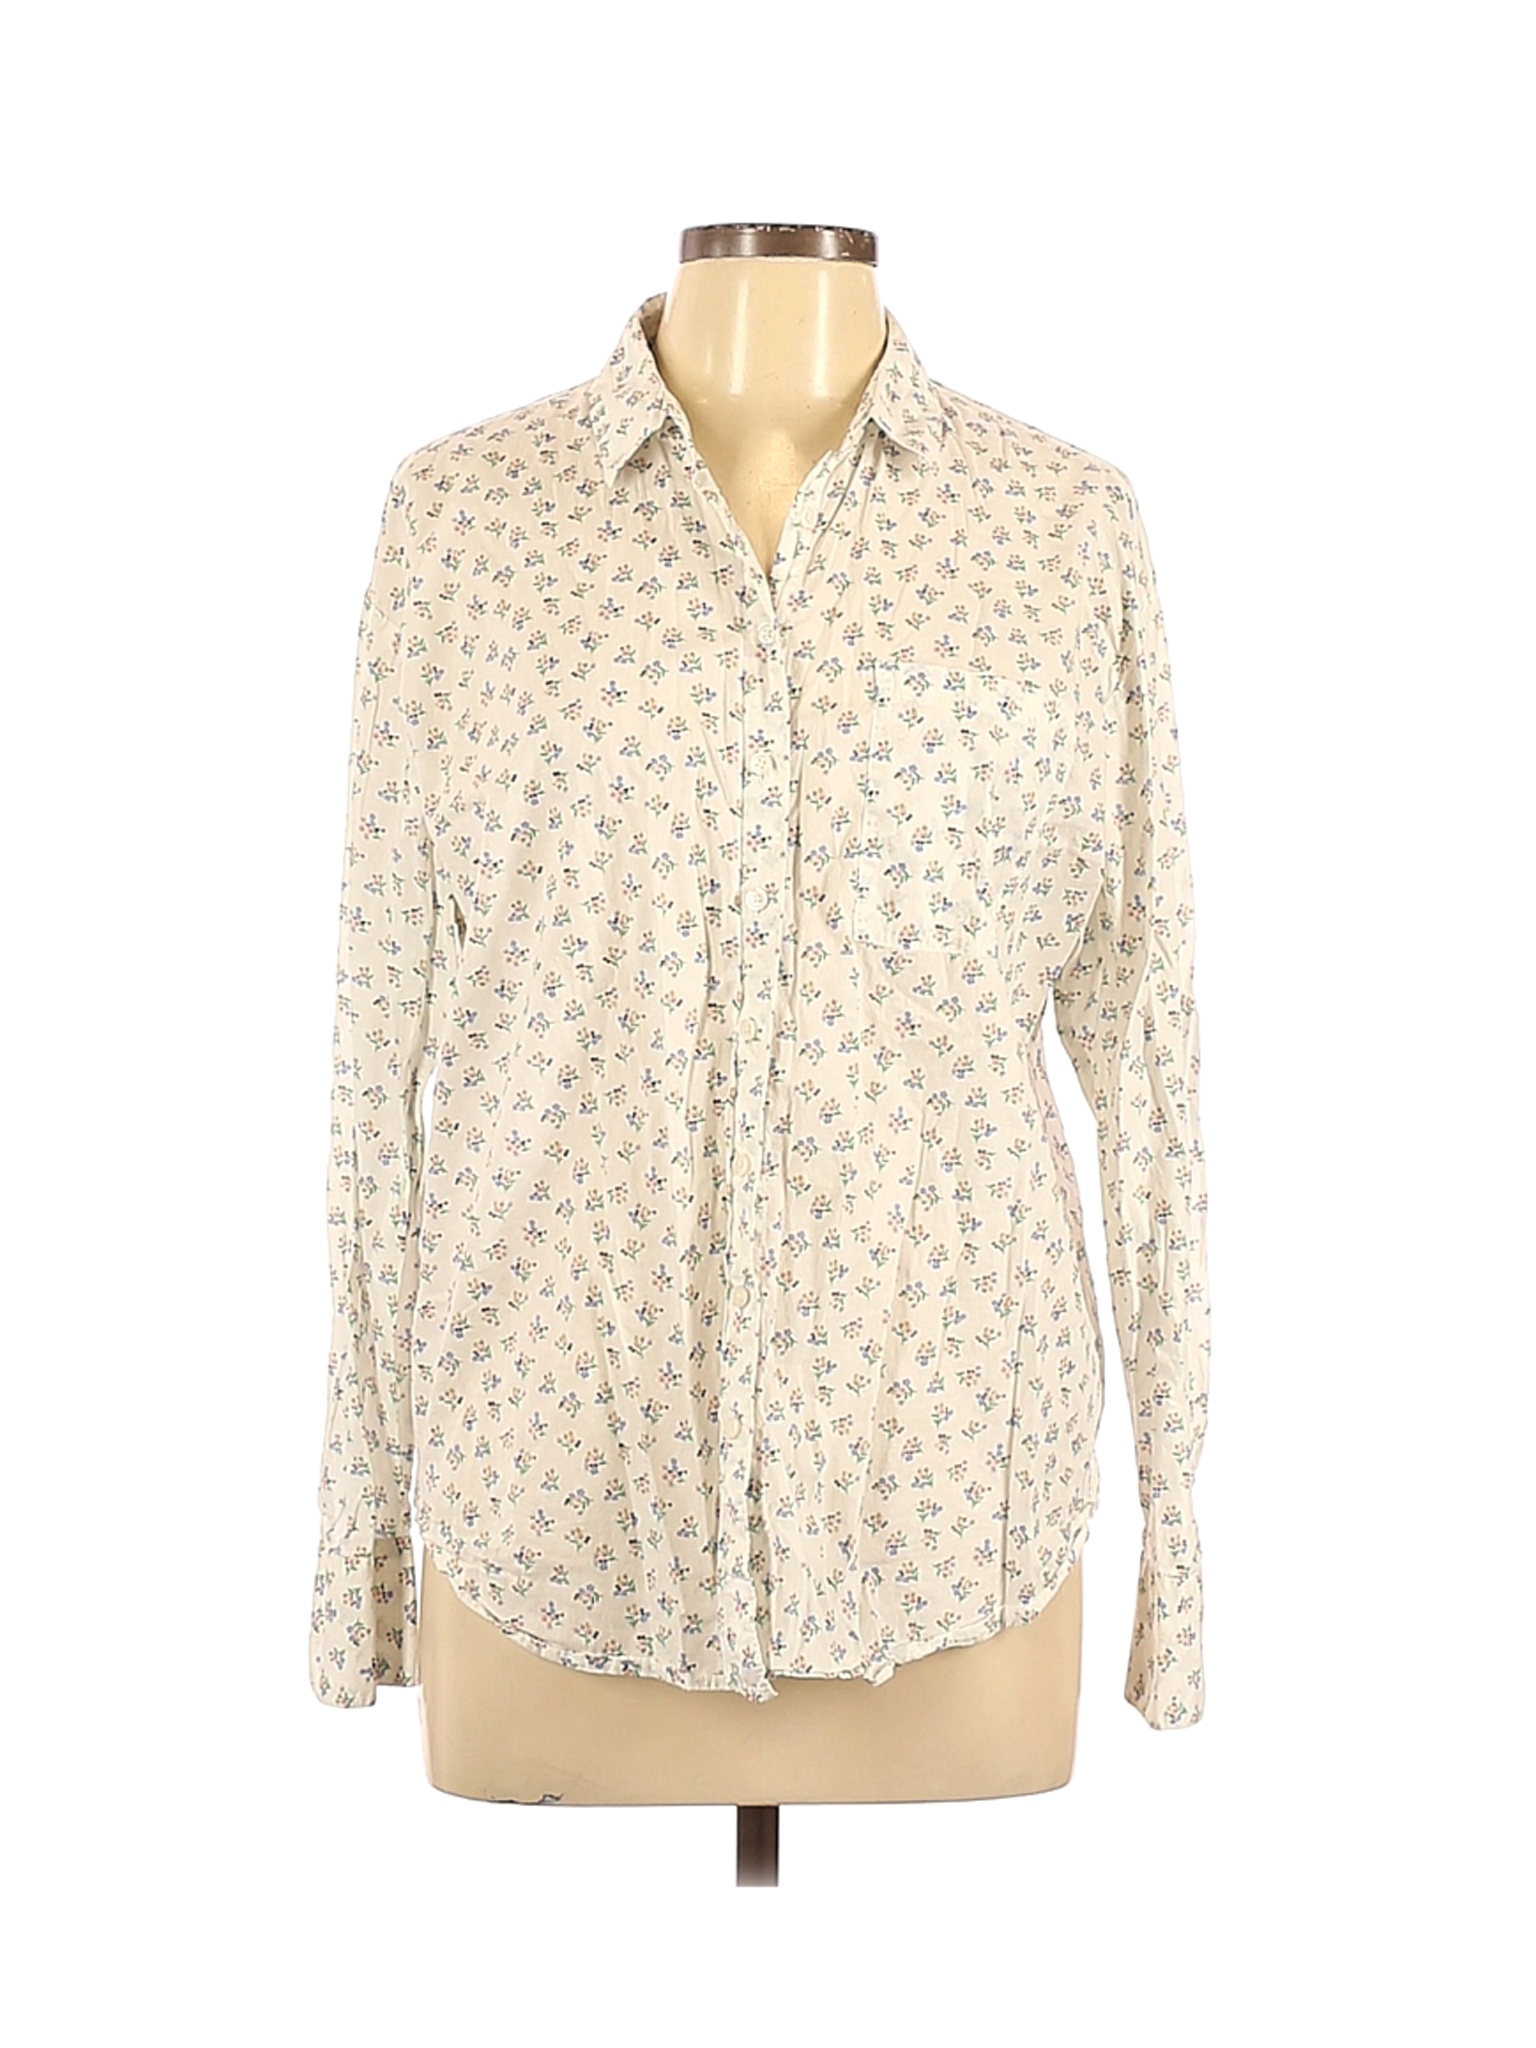 Boden Women Ivory Long Sleeve Button-Down Shirt 12 | eBay